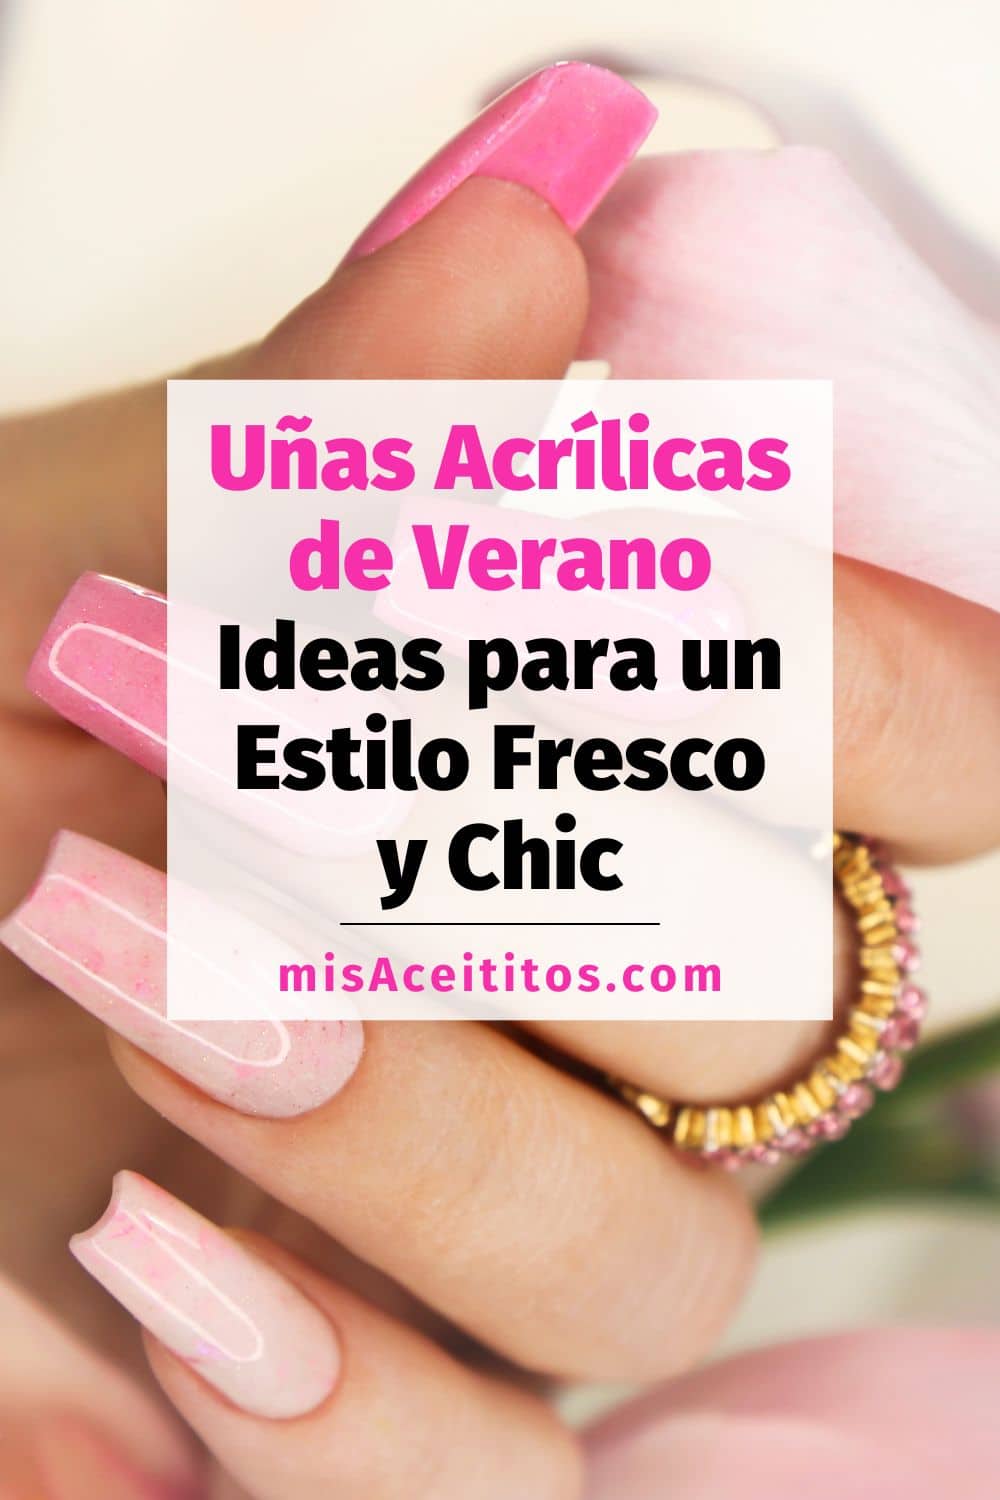 Pin de Pinterest con uñas acrílicas de verano con forma de ataúd en diferentes tonos de color rosa.